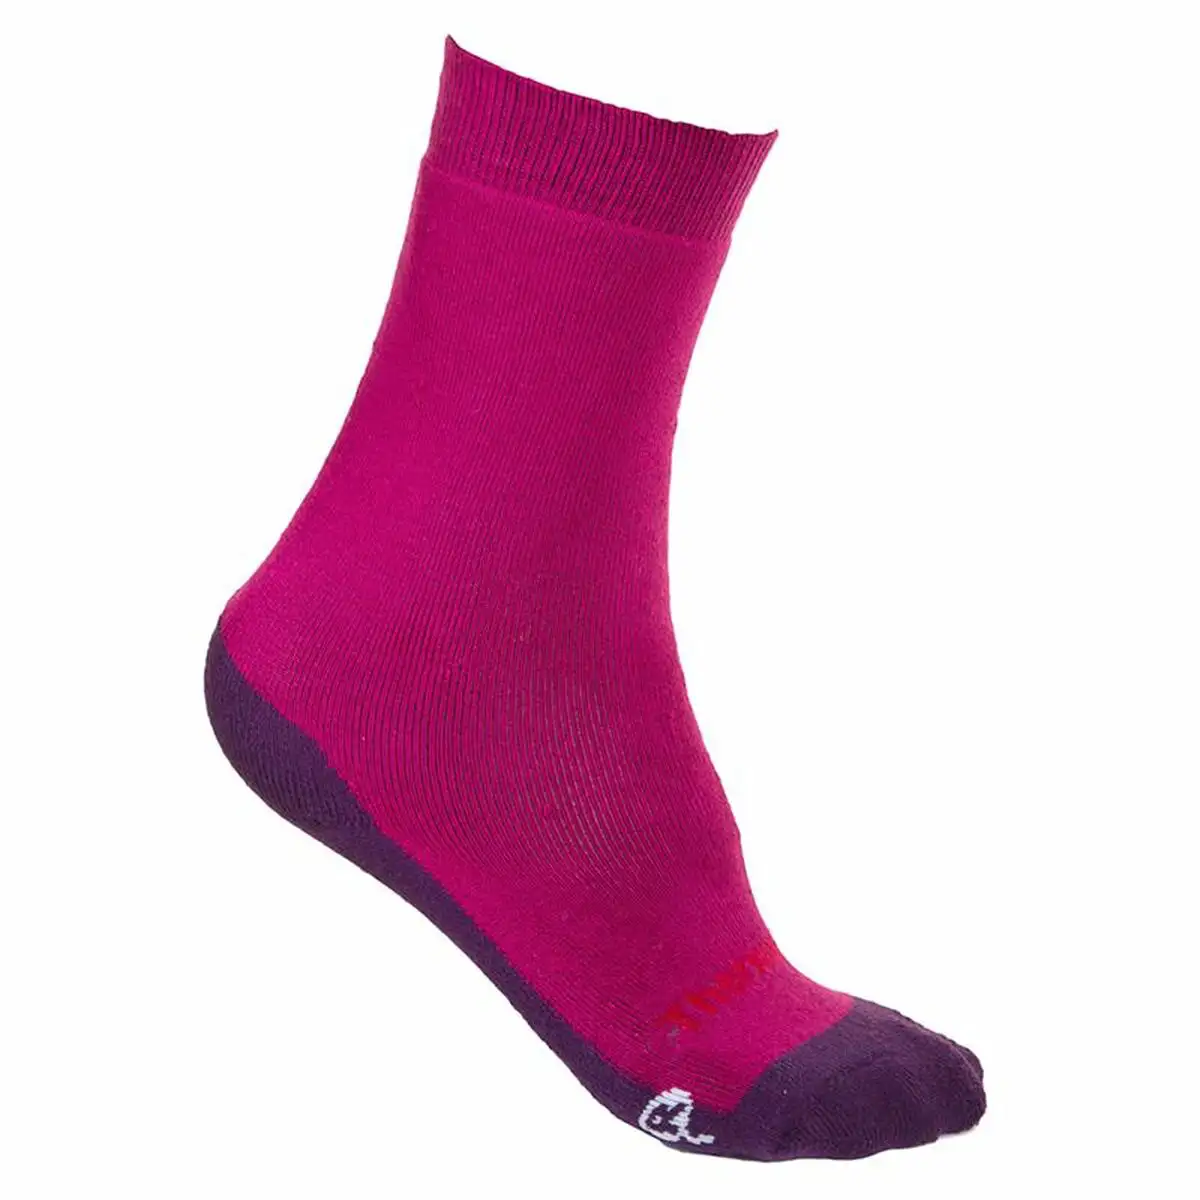 Chaussettes de sport joluvi thermolite classic fuchsia rose_9648. DIAYTAR SENEGAL - Là où le Shopping devient une Fête des Sens. Plongez dans notre univers et choisissez des produits qui éveillent votre goût pour l'esthétique et l'authenticité.